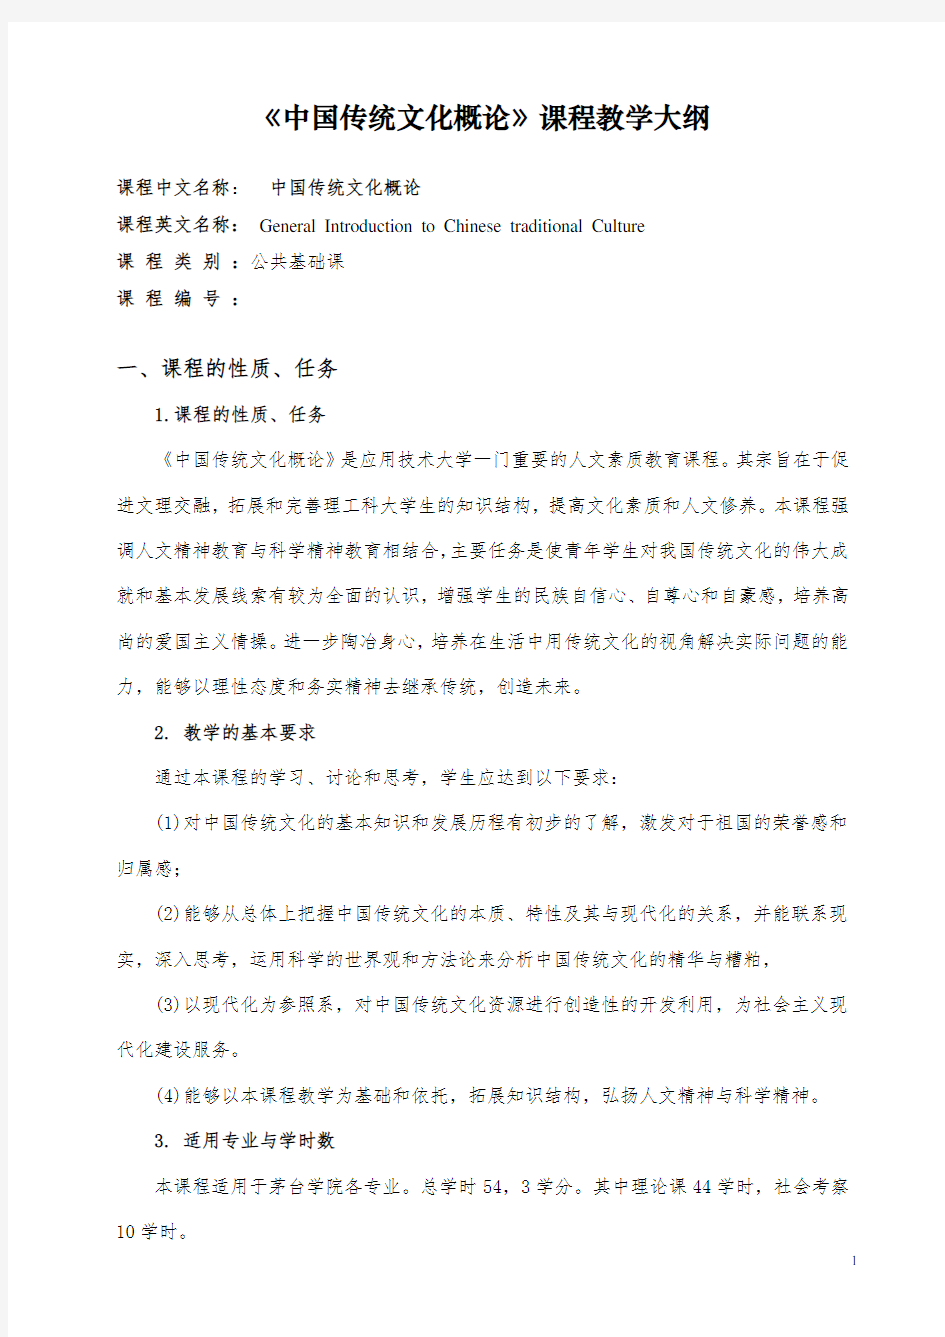 《中国传统文化概论》课程教学大纲(本科)